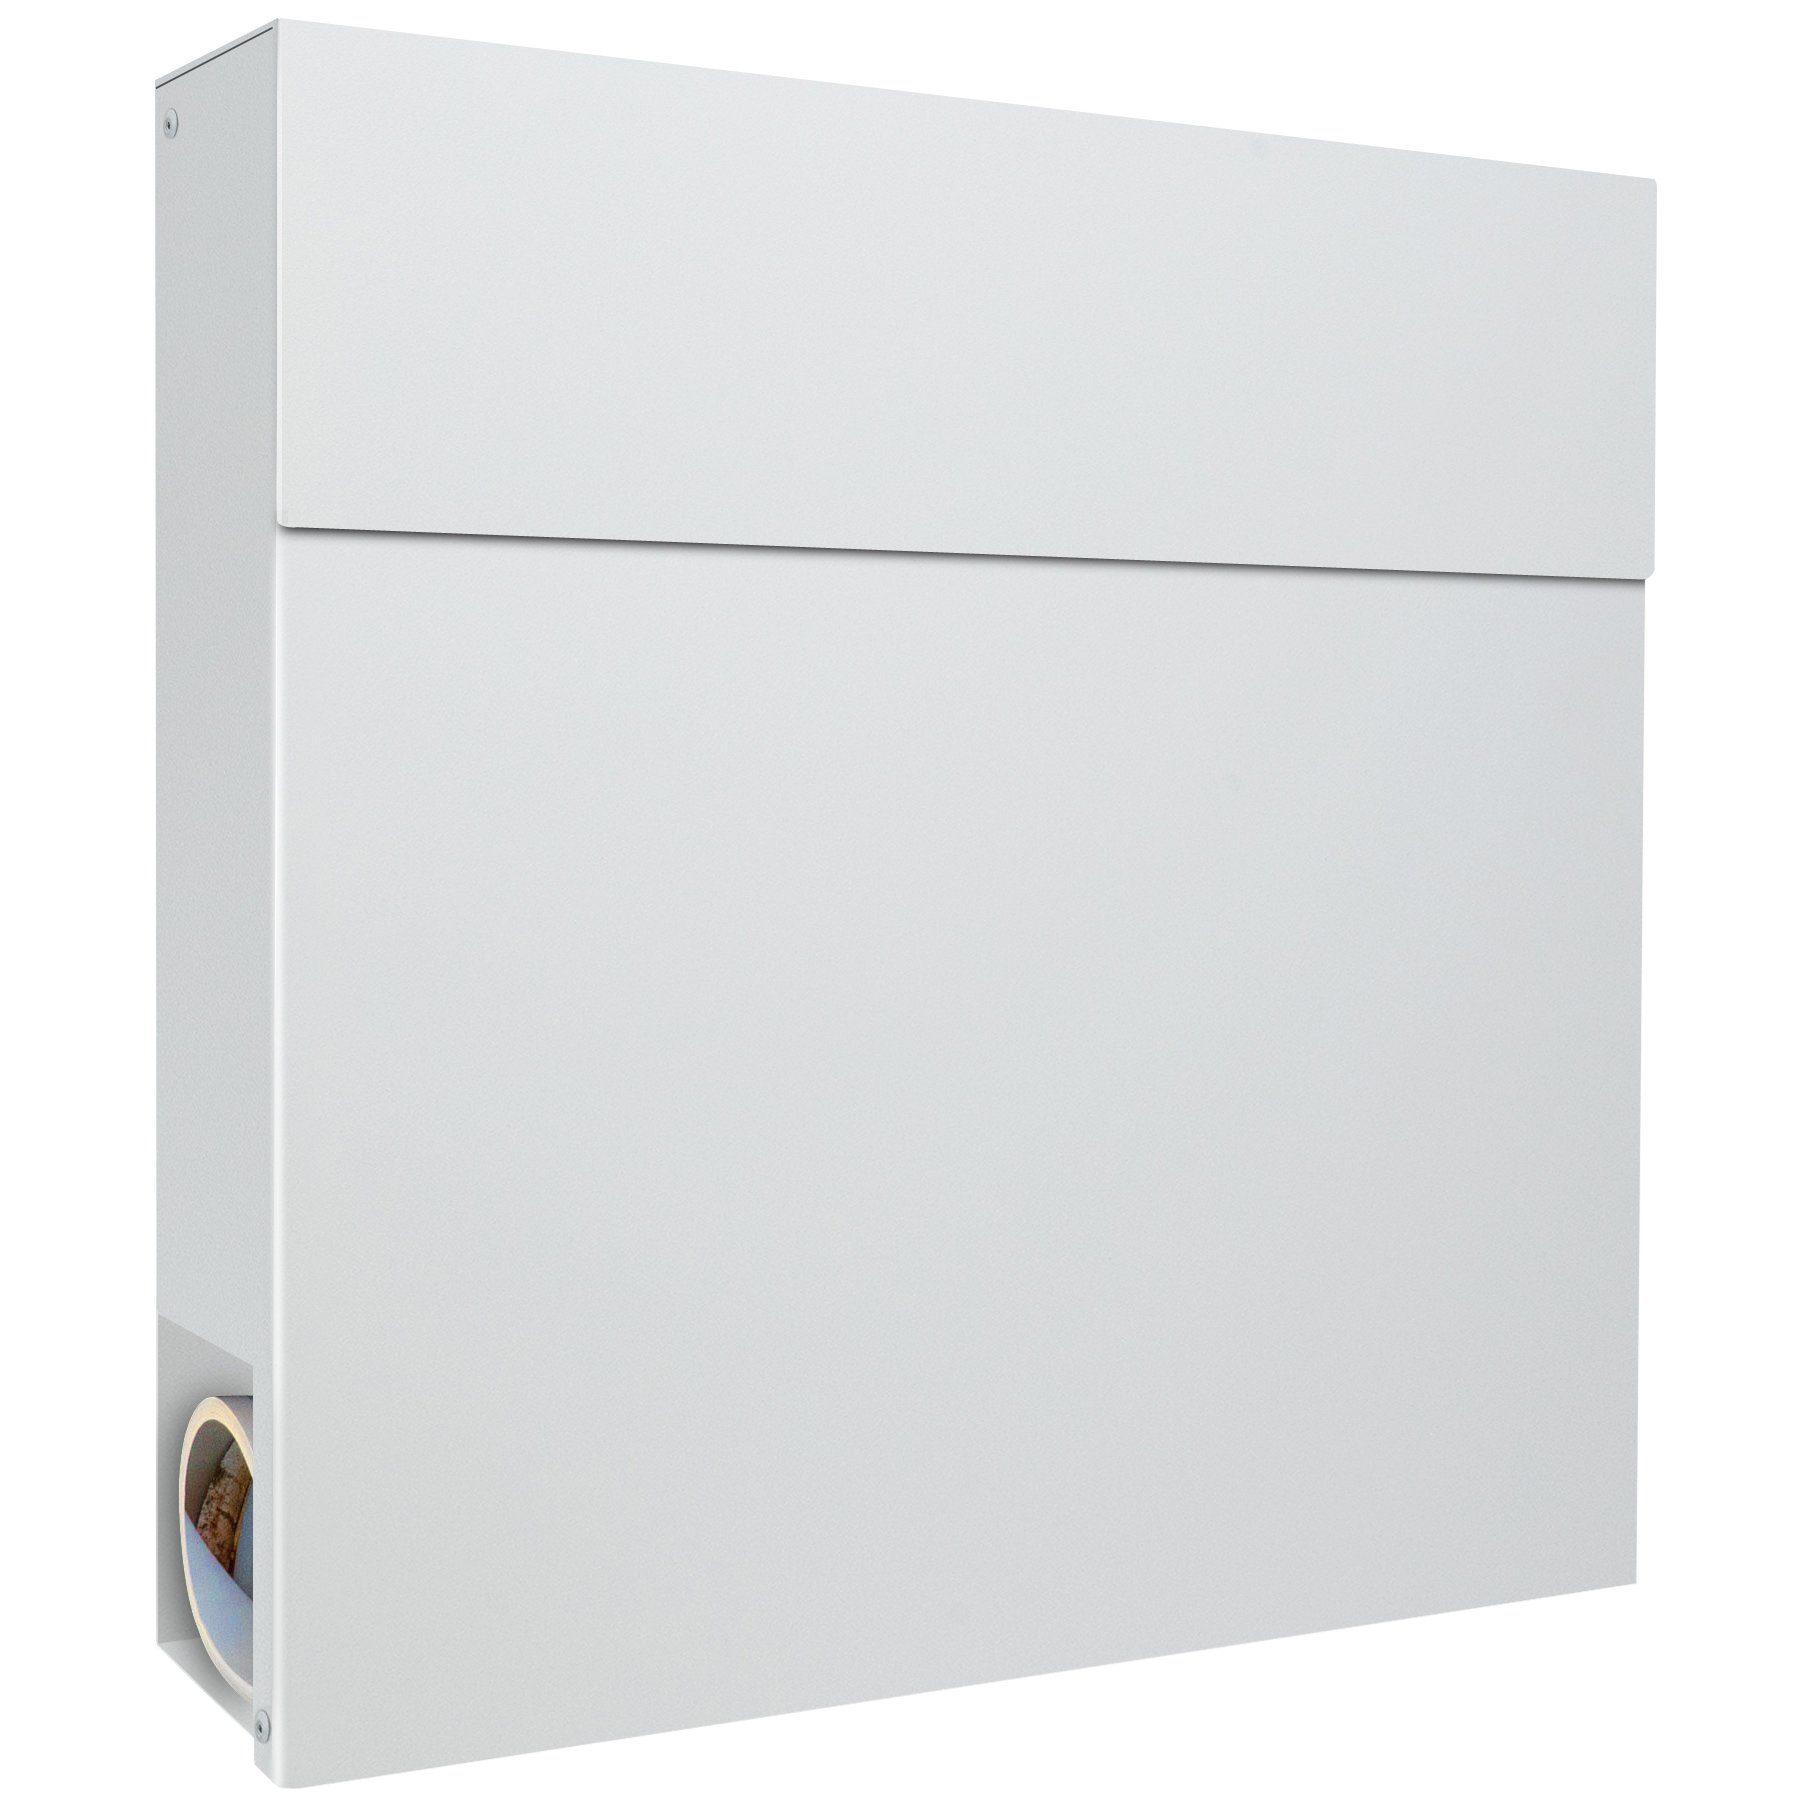 MOCAVI Briefkasten MOCAVI Box 530 Design-Briefkasten weiß (RAL 9003), integriert, passender Verschluss (zusätzlich bestellbar) für Wetterseite, beidseitig nutzbar: Vers5 9003